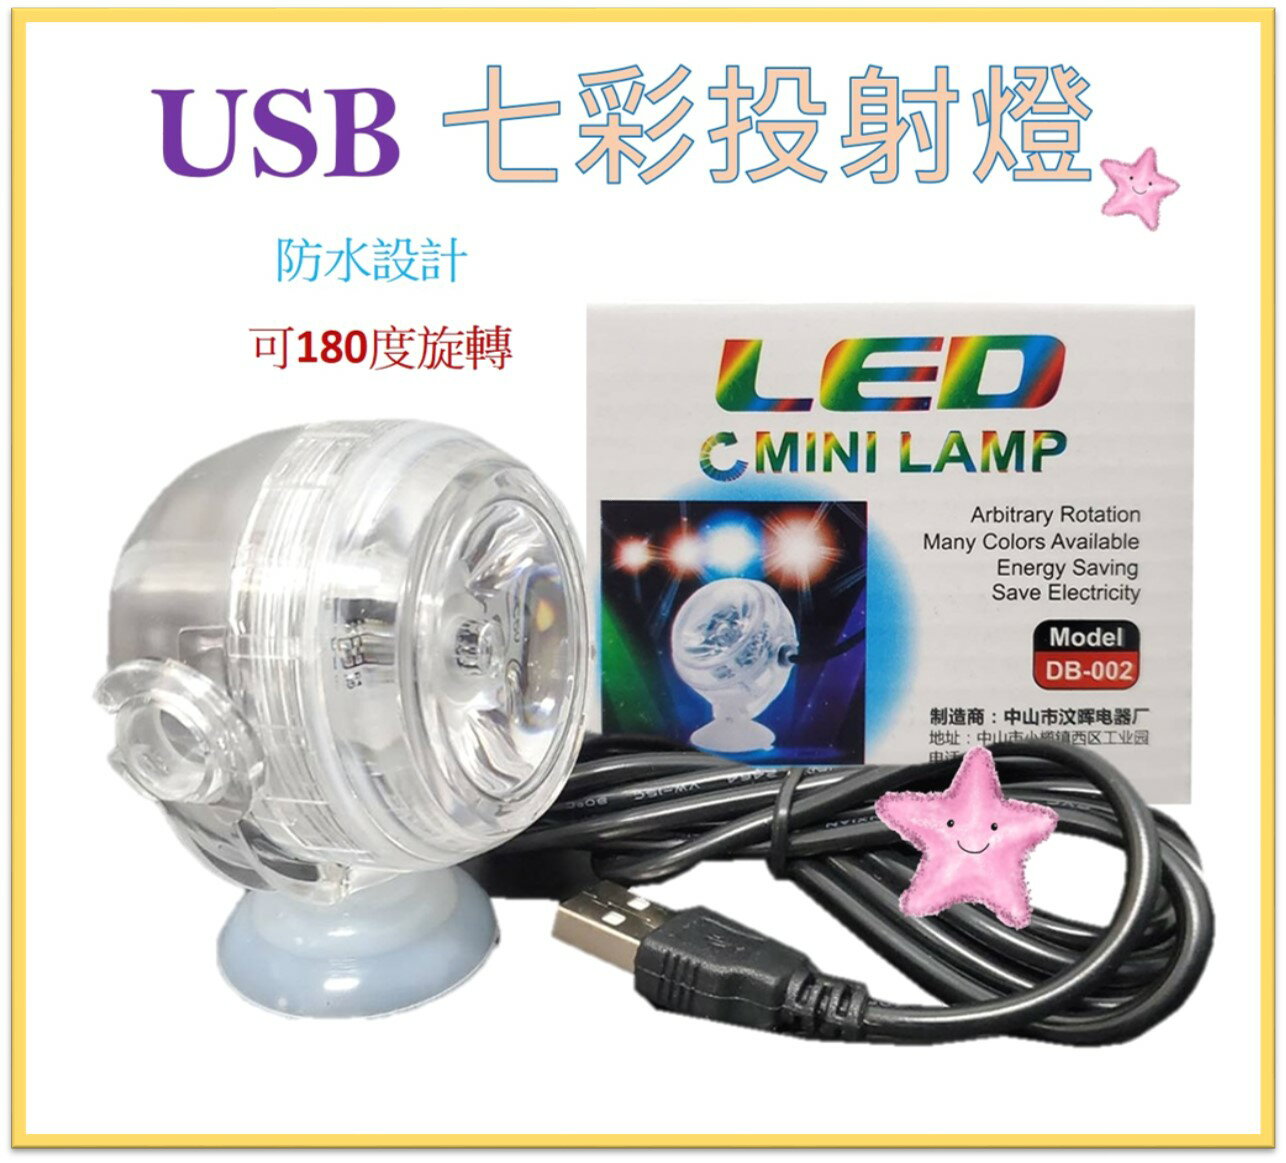 七彩投射燈(OB-002) USB LED 變色燈 造景燈 水中燈 七彩燈 氣氛燈 星星水族